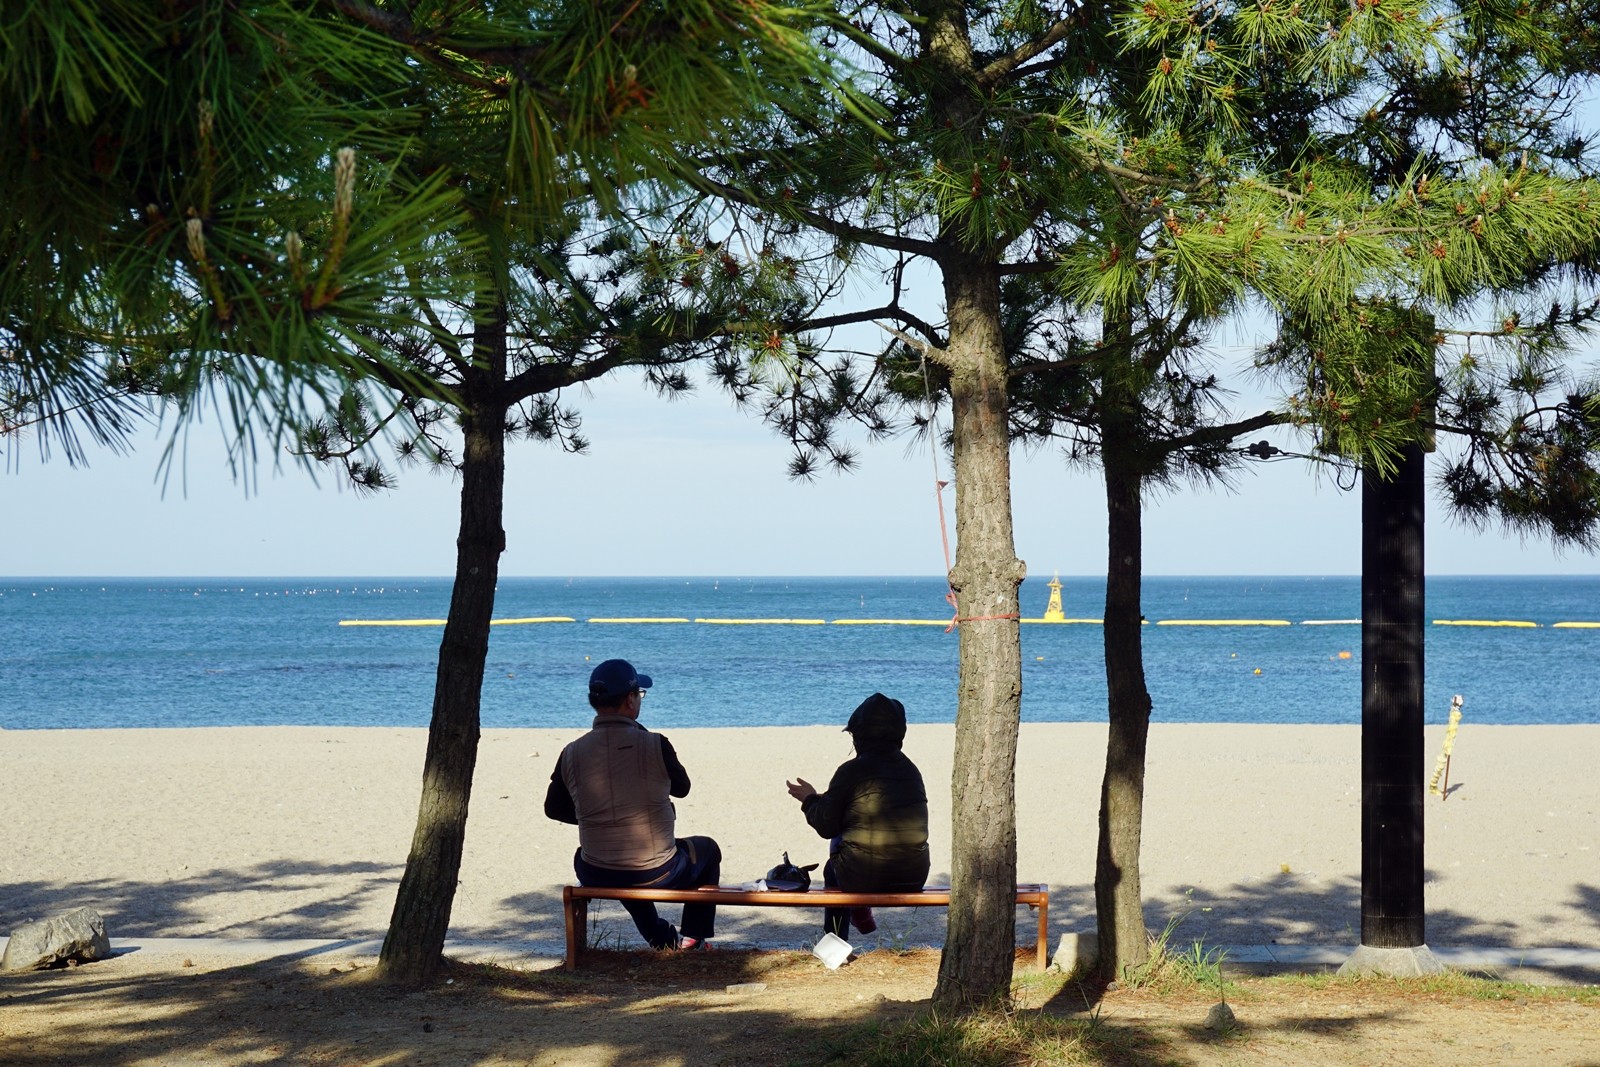 나정고운모래해변 벤치에서 대화를 나누는 관광객의 모습